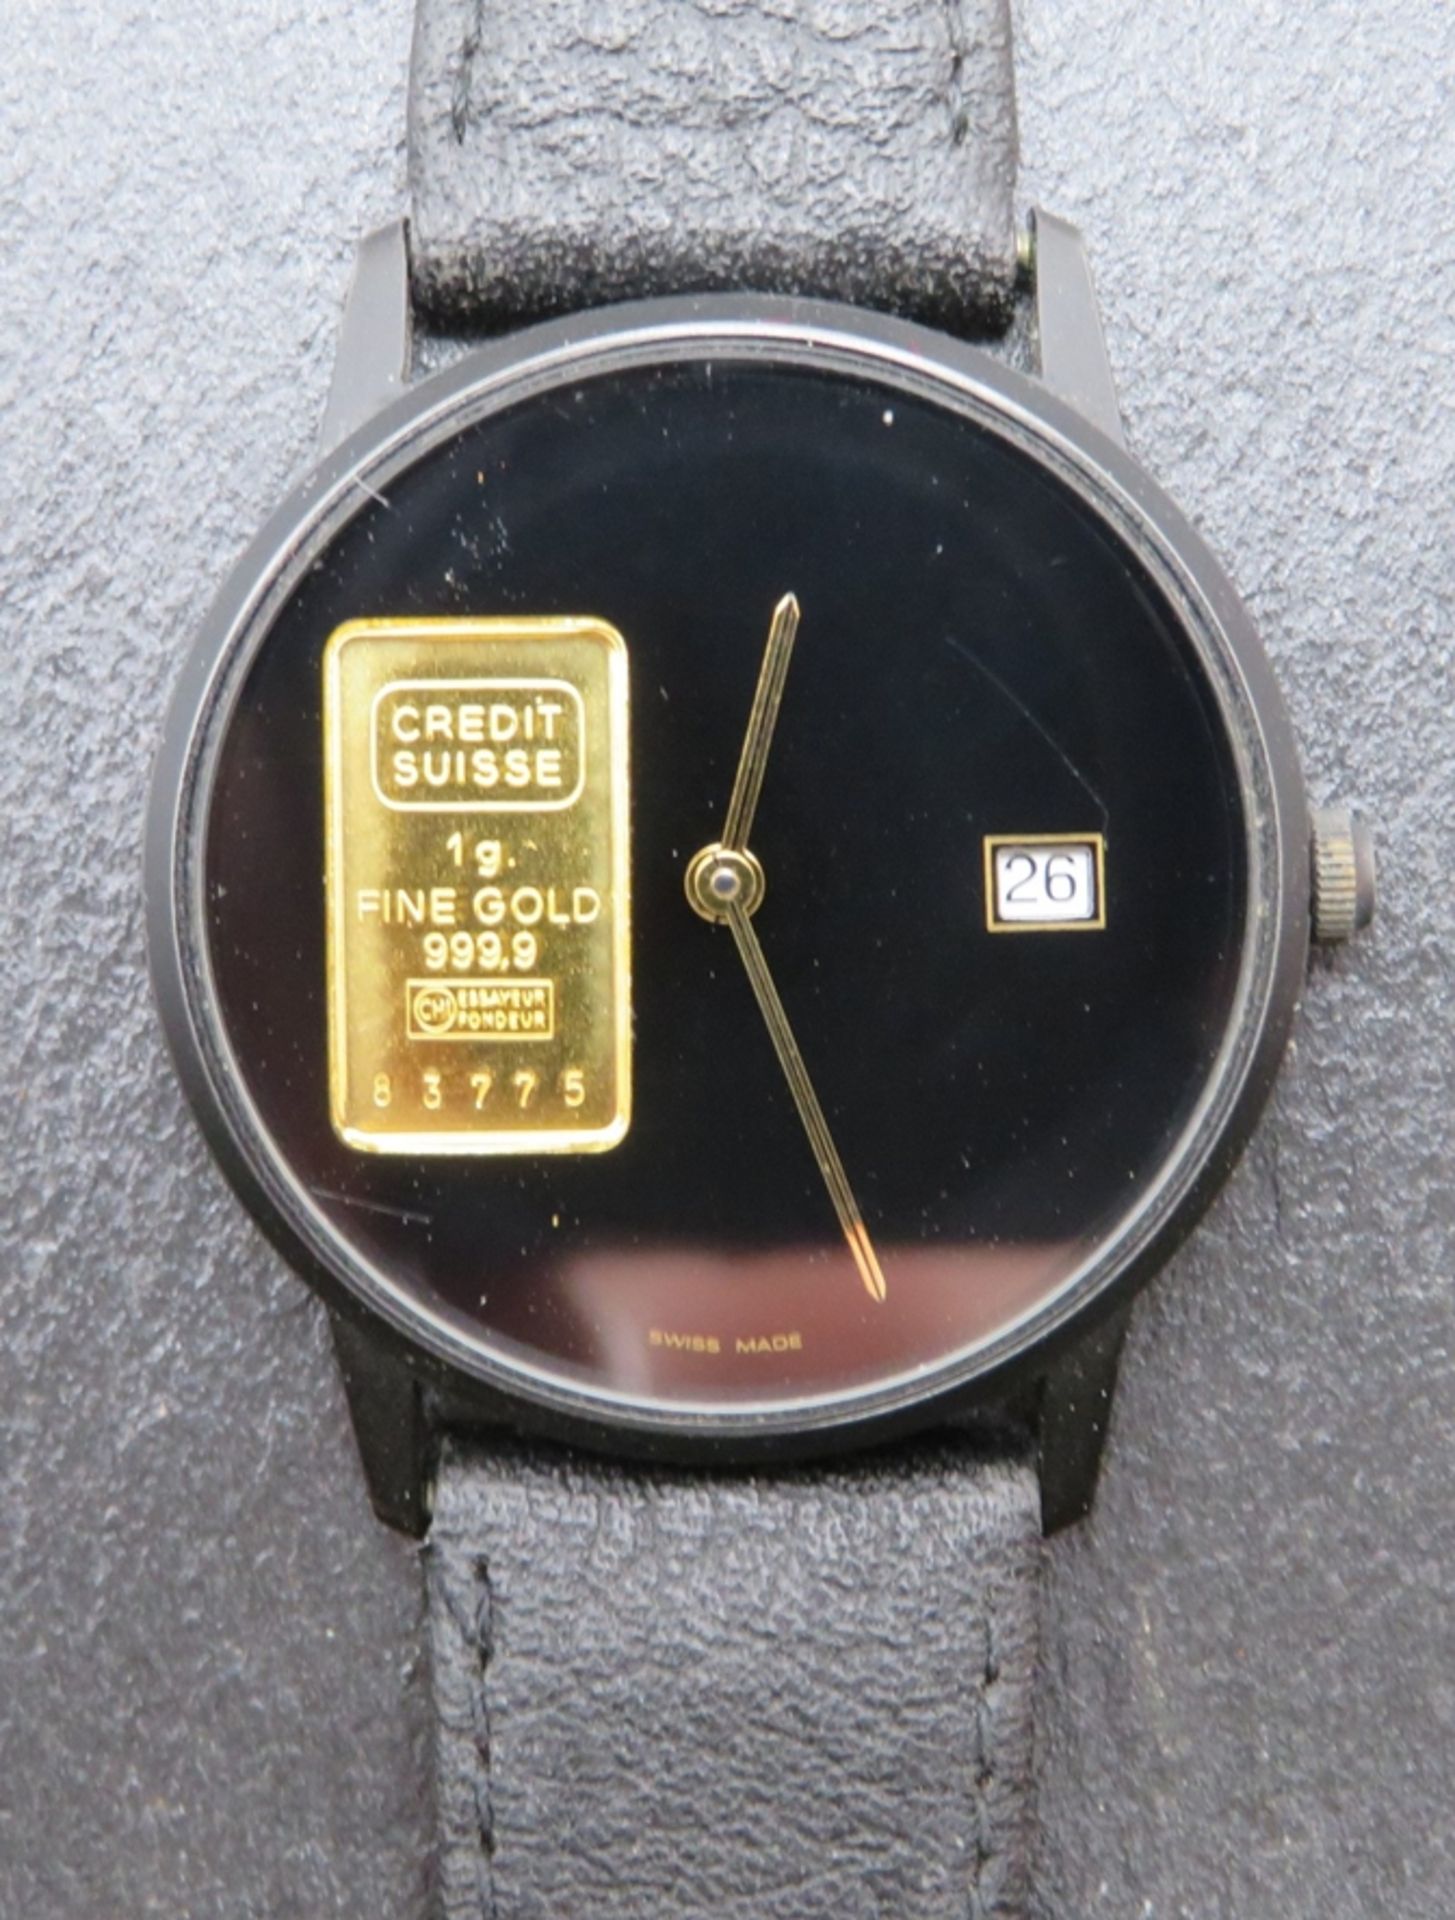 DAU, Schweiz, 1 Gramm Goldbarren, Gold 999,9/000, Credit Suisse, geschwärztes Stahlgehäuse, Quarzwe